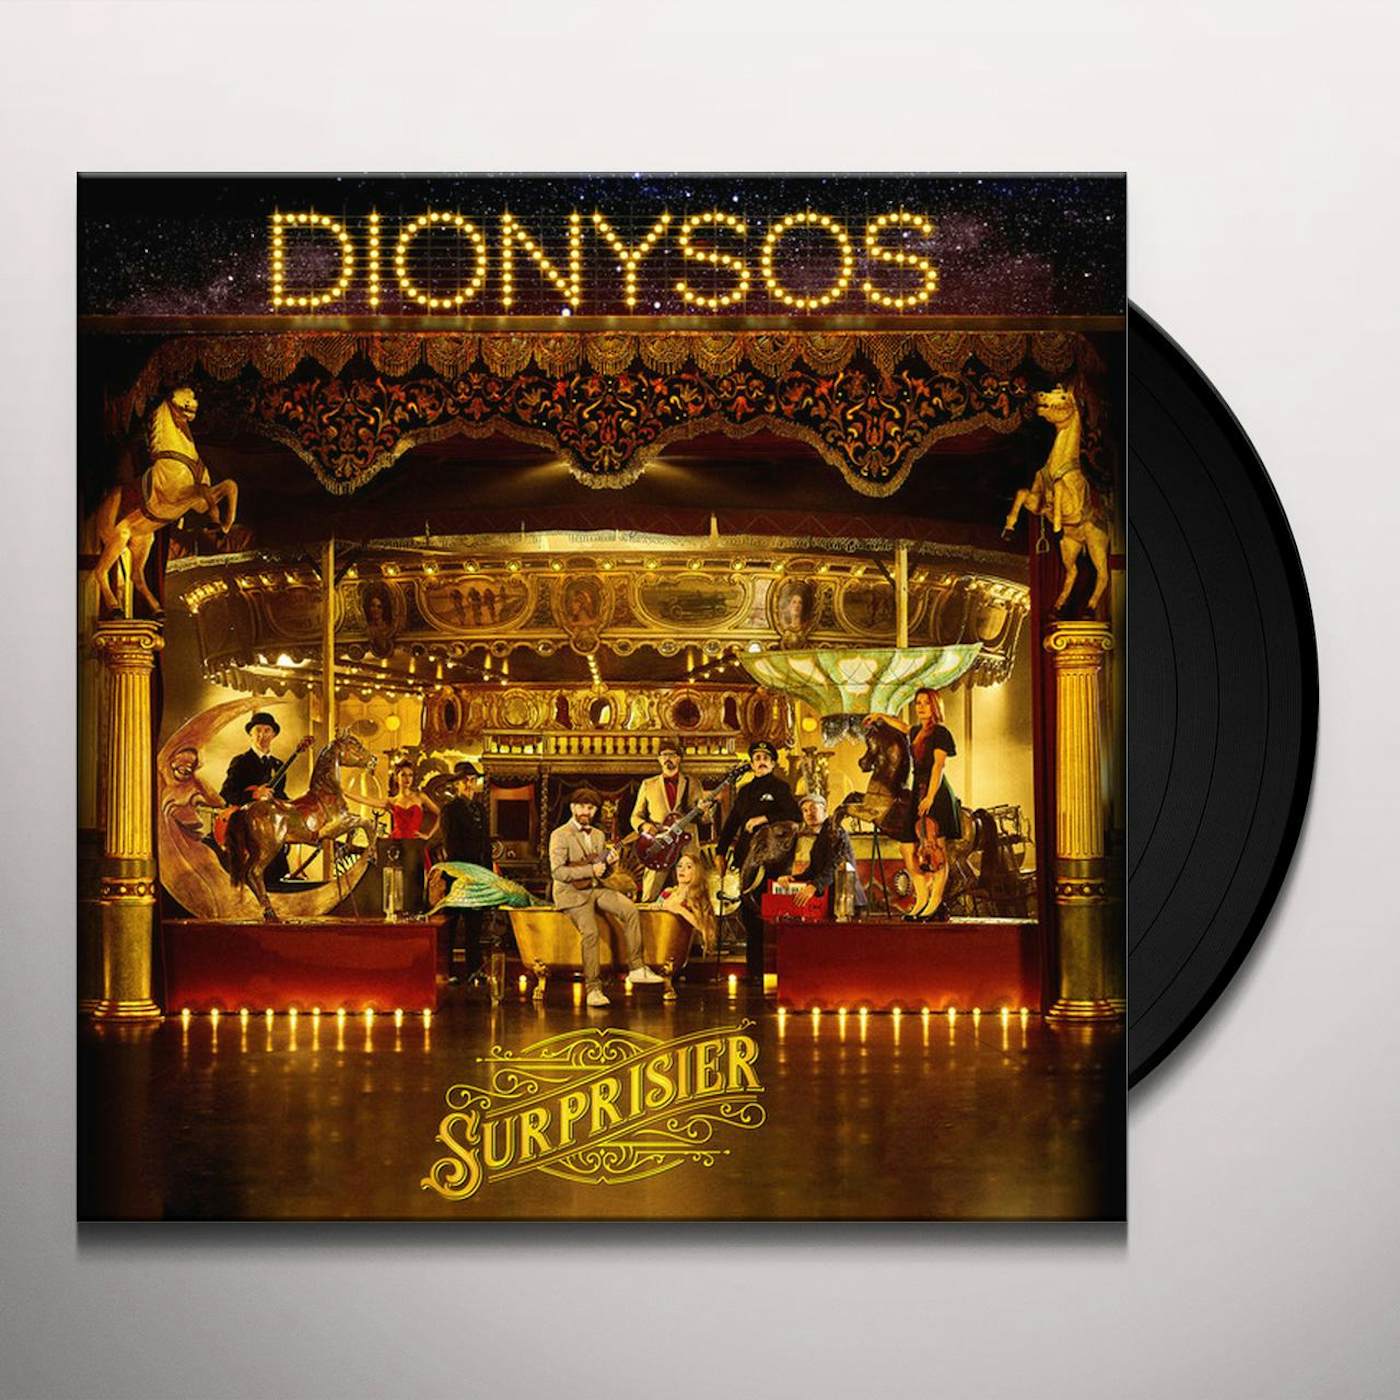 Dionysos Surprisier Vinyl Record